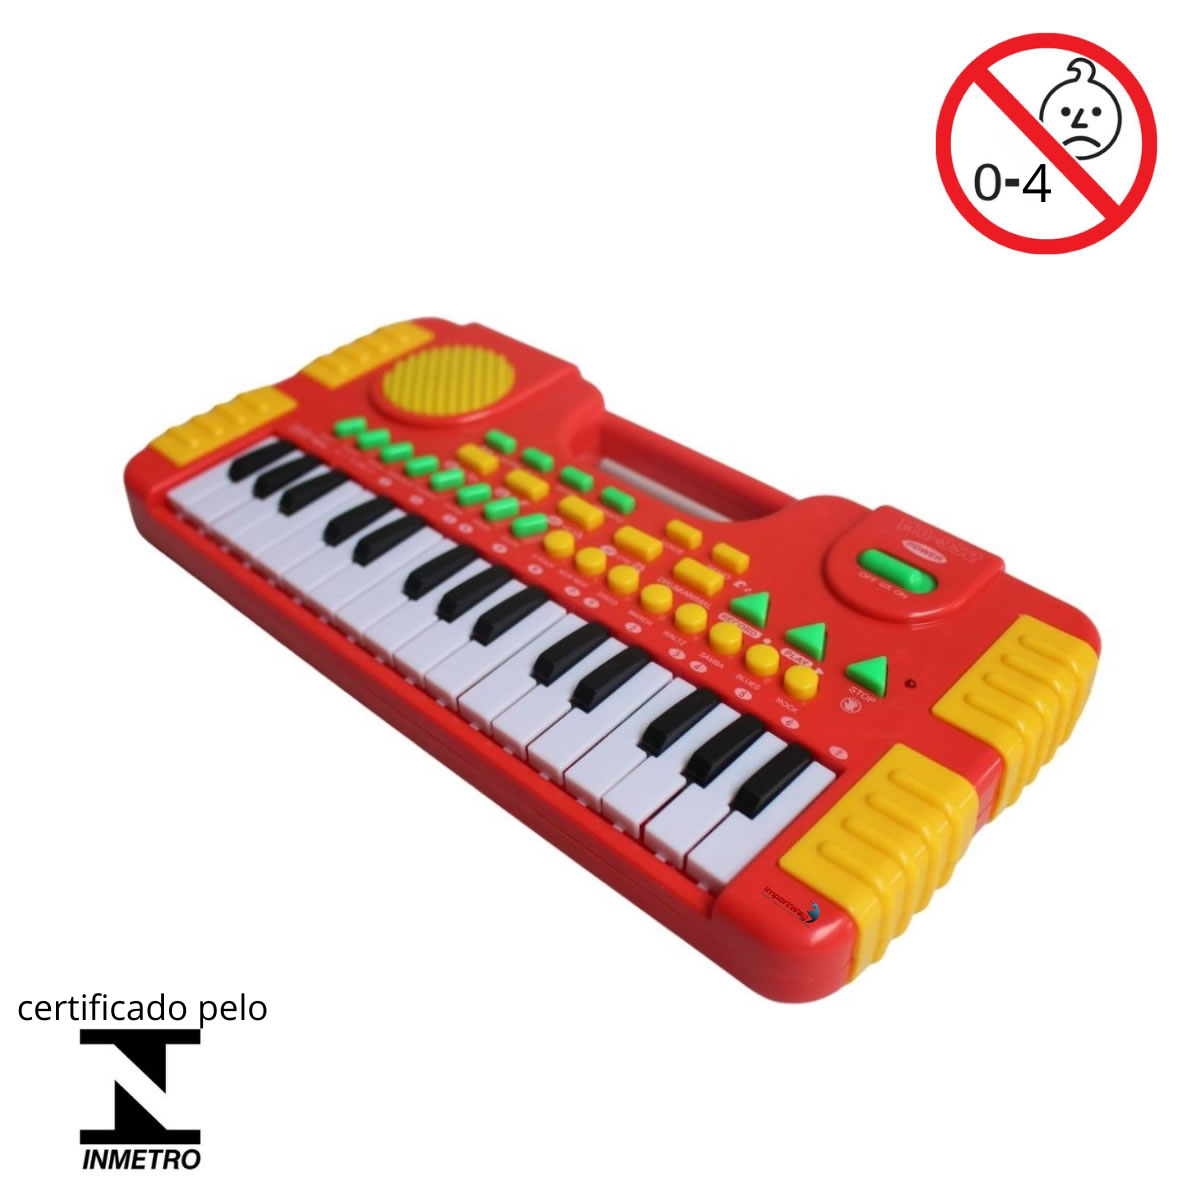 Luggi Instrumentos Musicais - Afinados com você! - Piano Infantil Elétrico  Turbinho E-piano 22 Teclas Branco